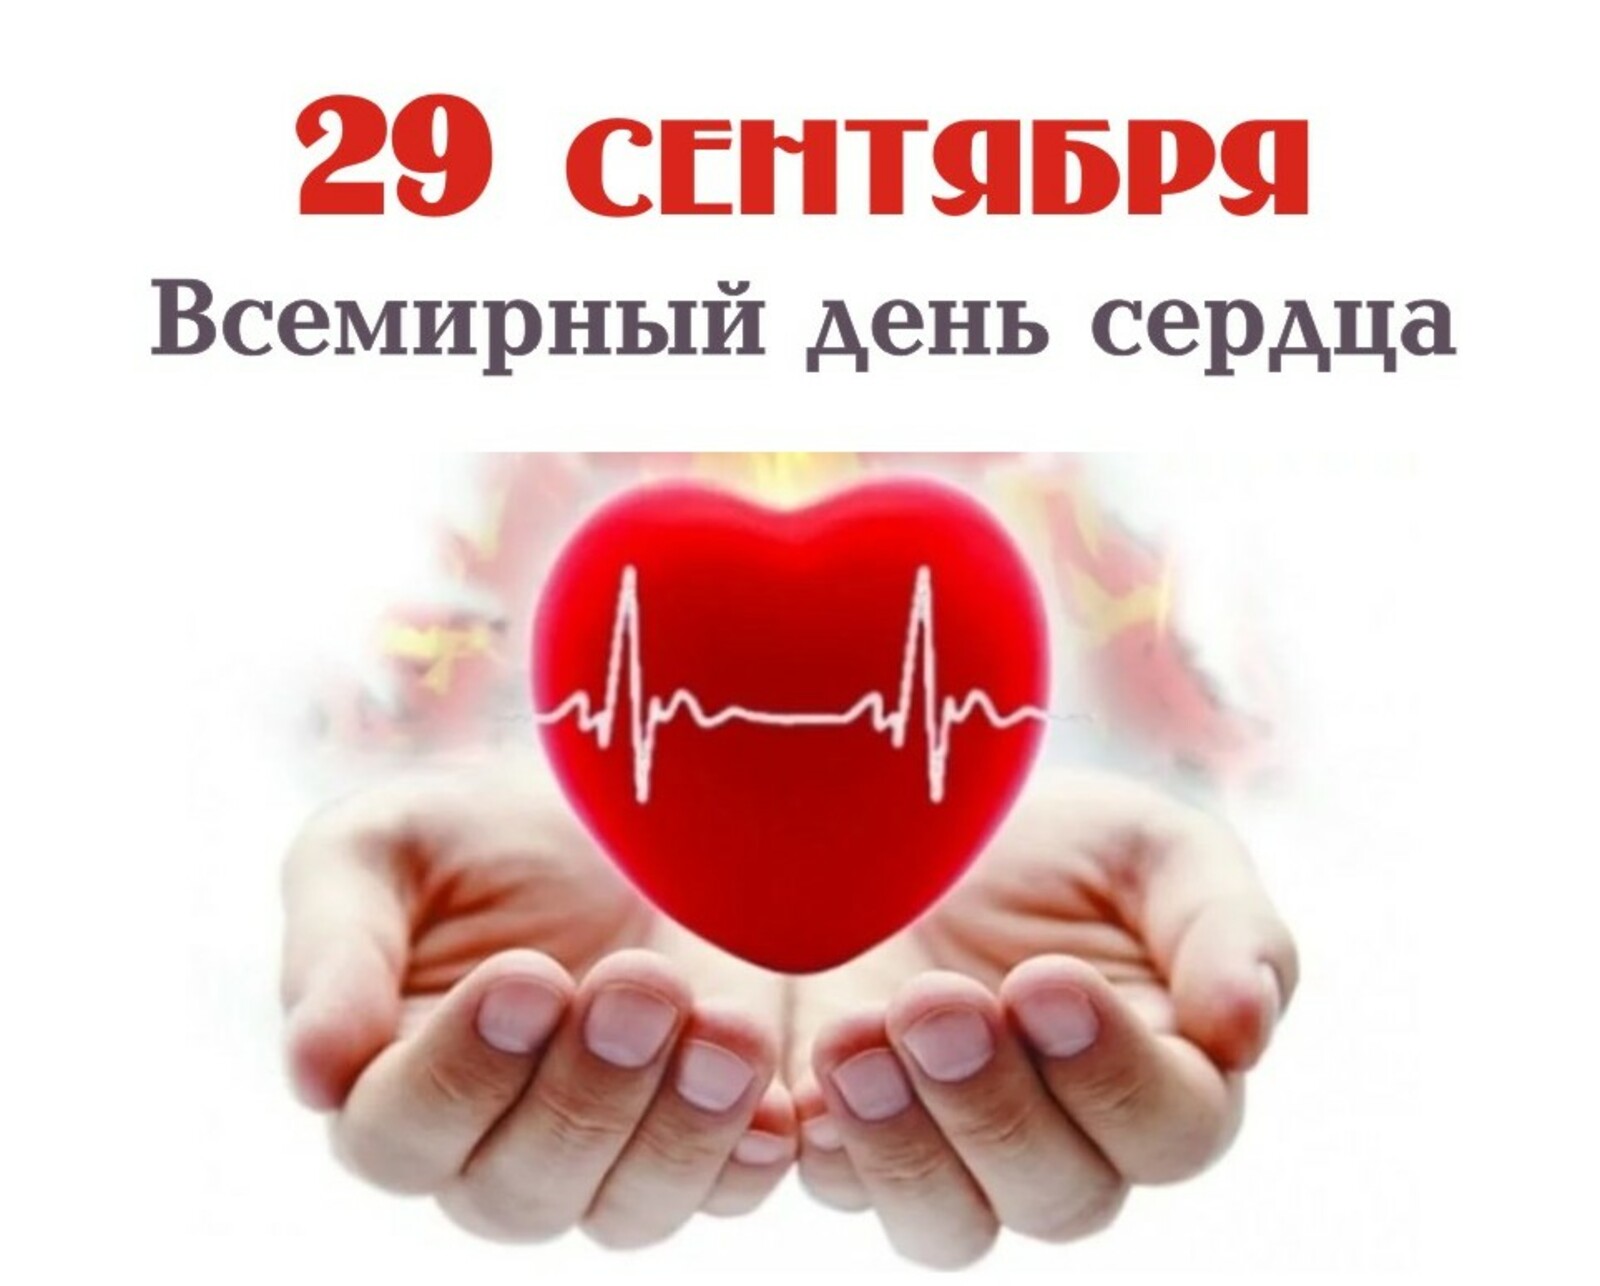 Всемирный день сердца отмечают ежегодно 29 сентября.